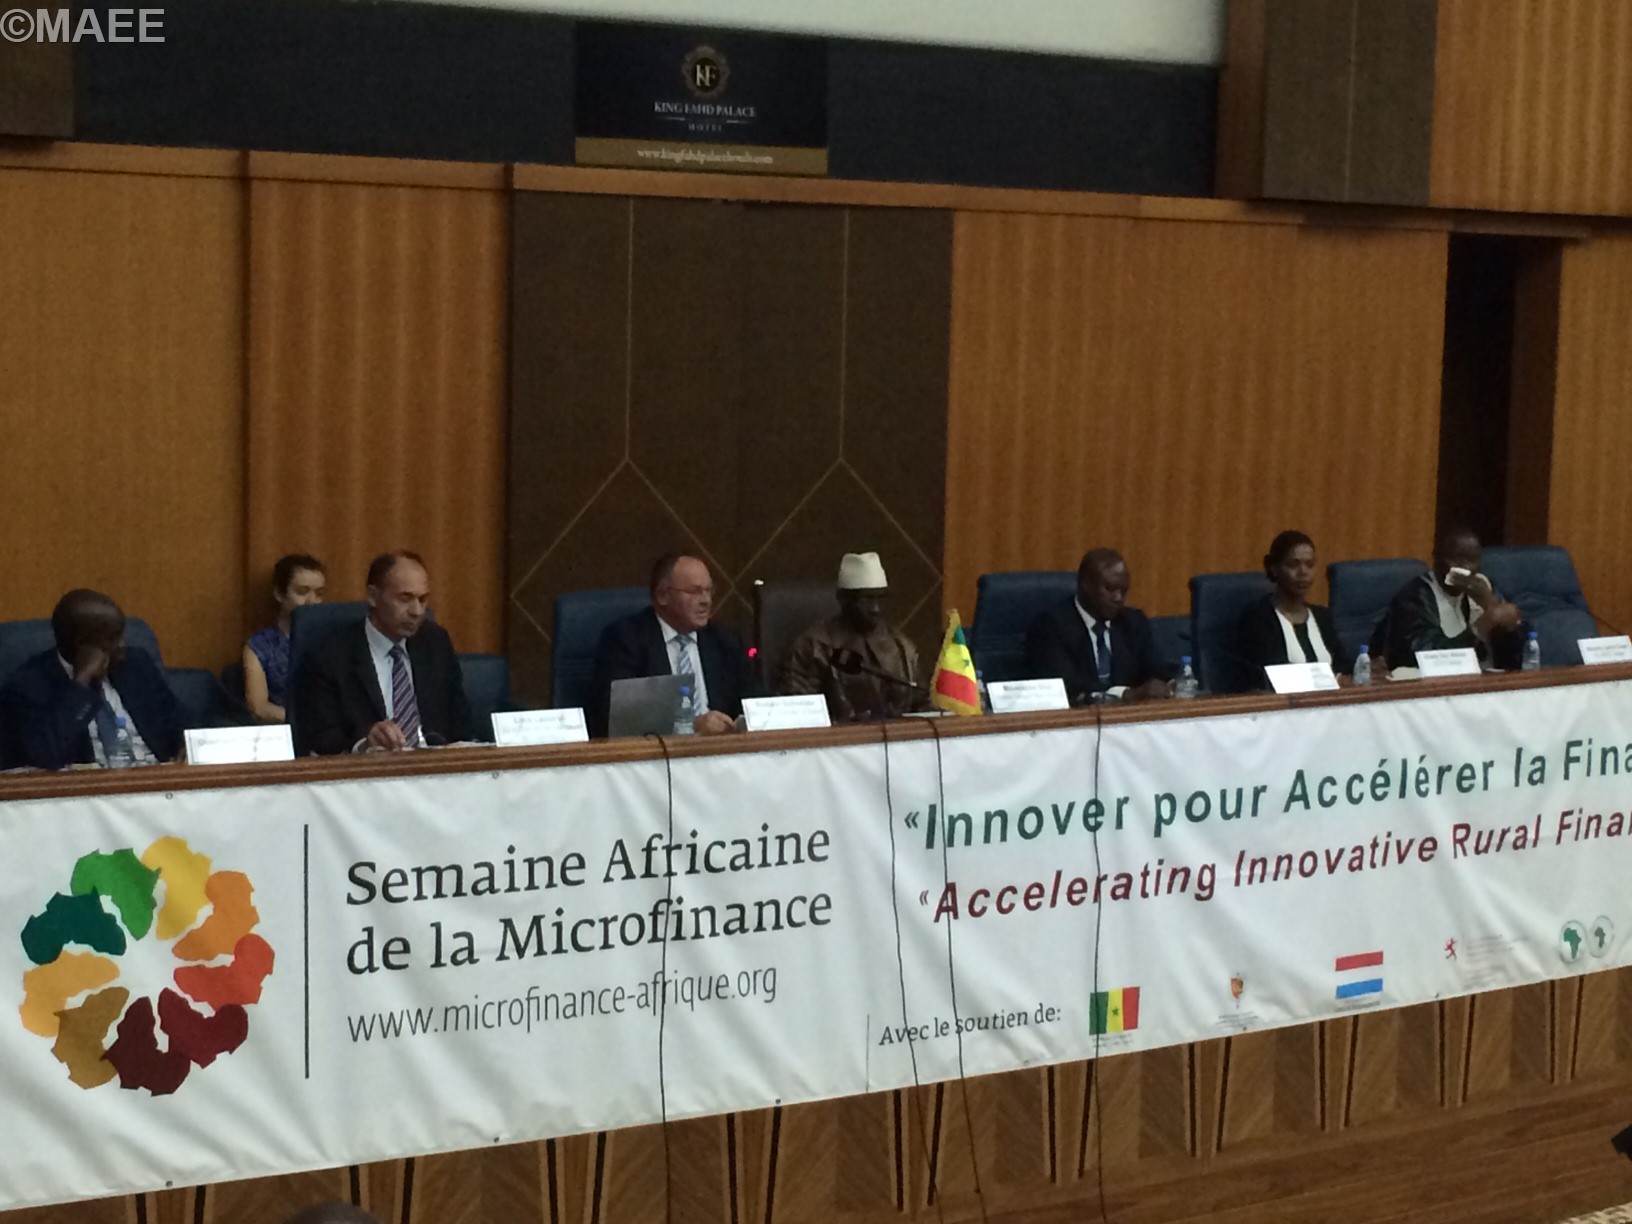  Romain Schneider  en pr, Romain Schneider à la Semaine africaine de la microfinance du 29 au 30 juin 2015